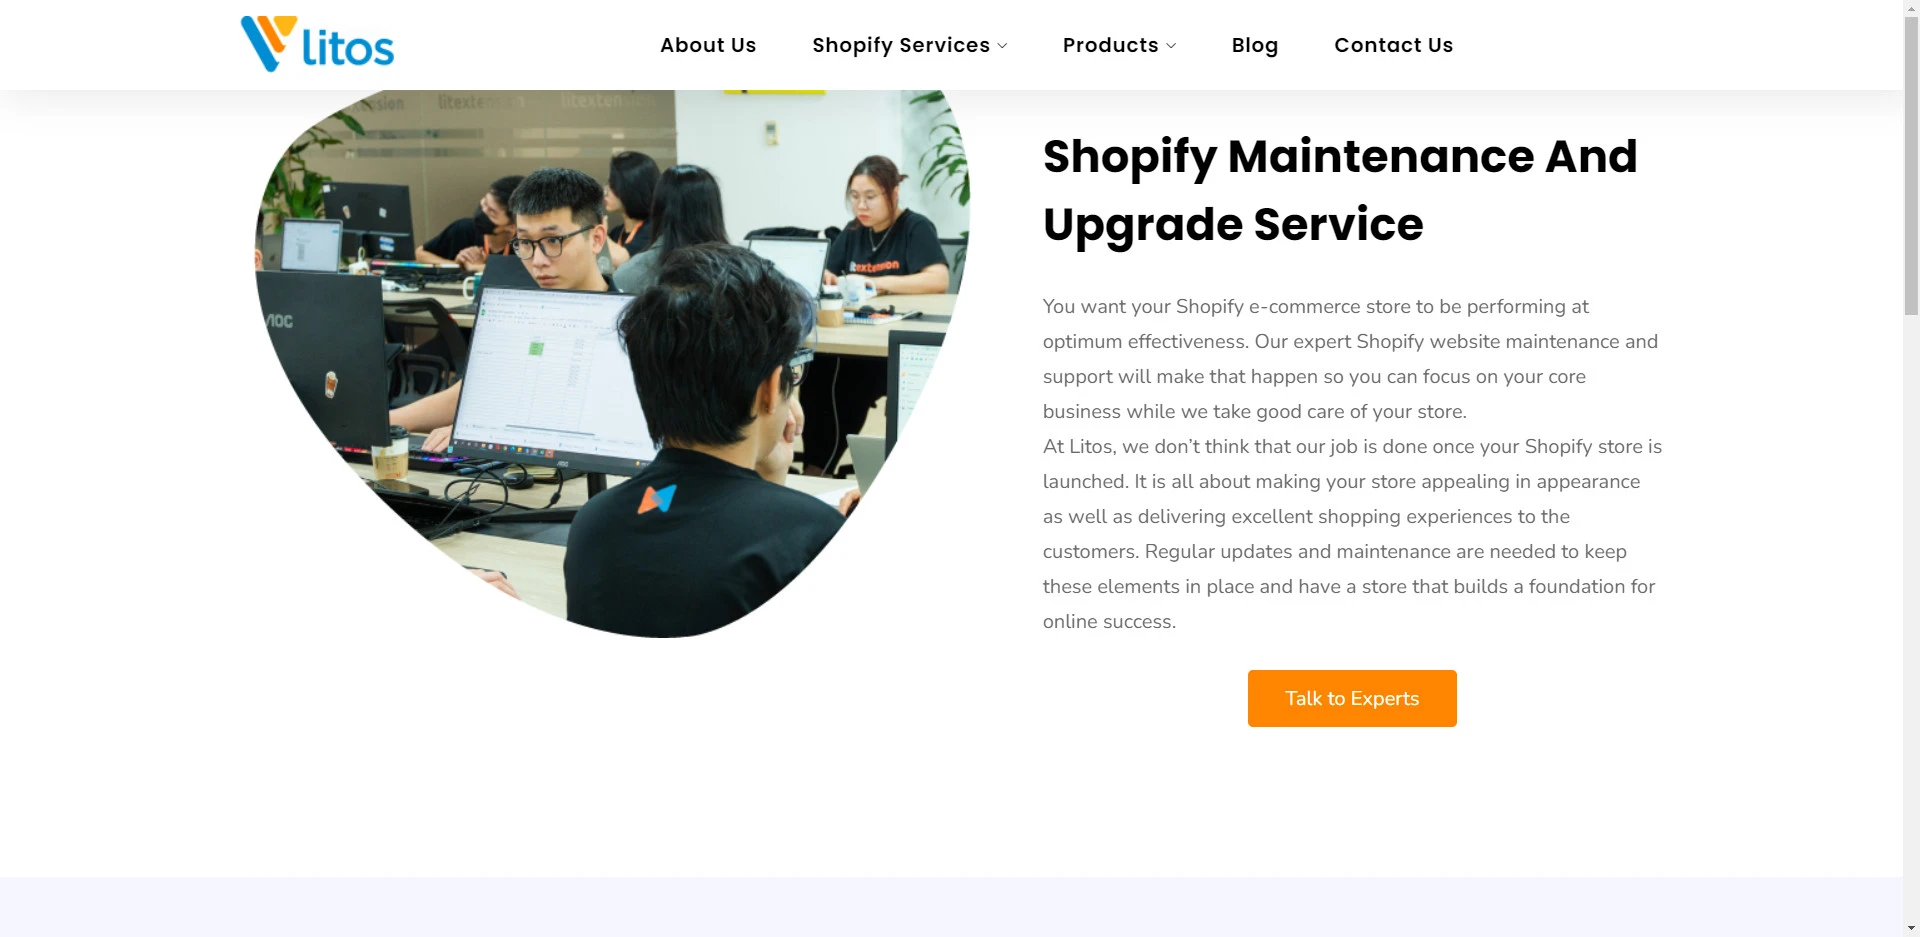 Litos’s Shopify Upgrade & Maintenance Service